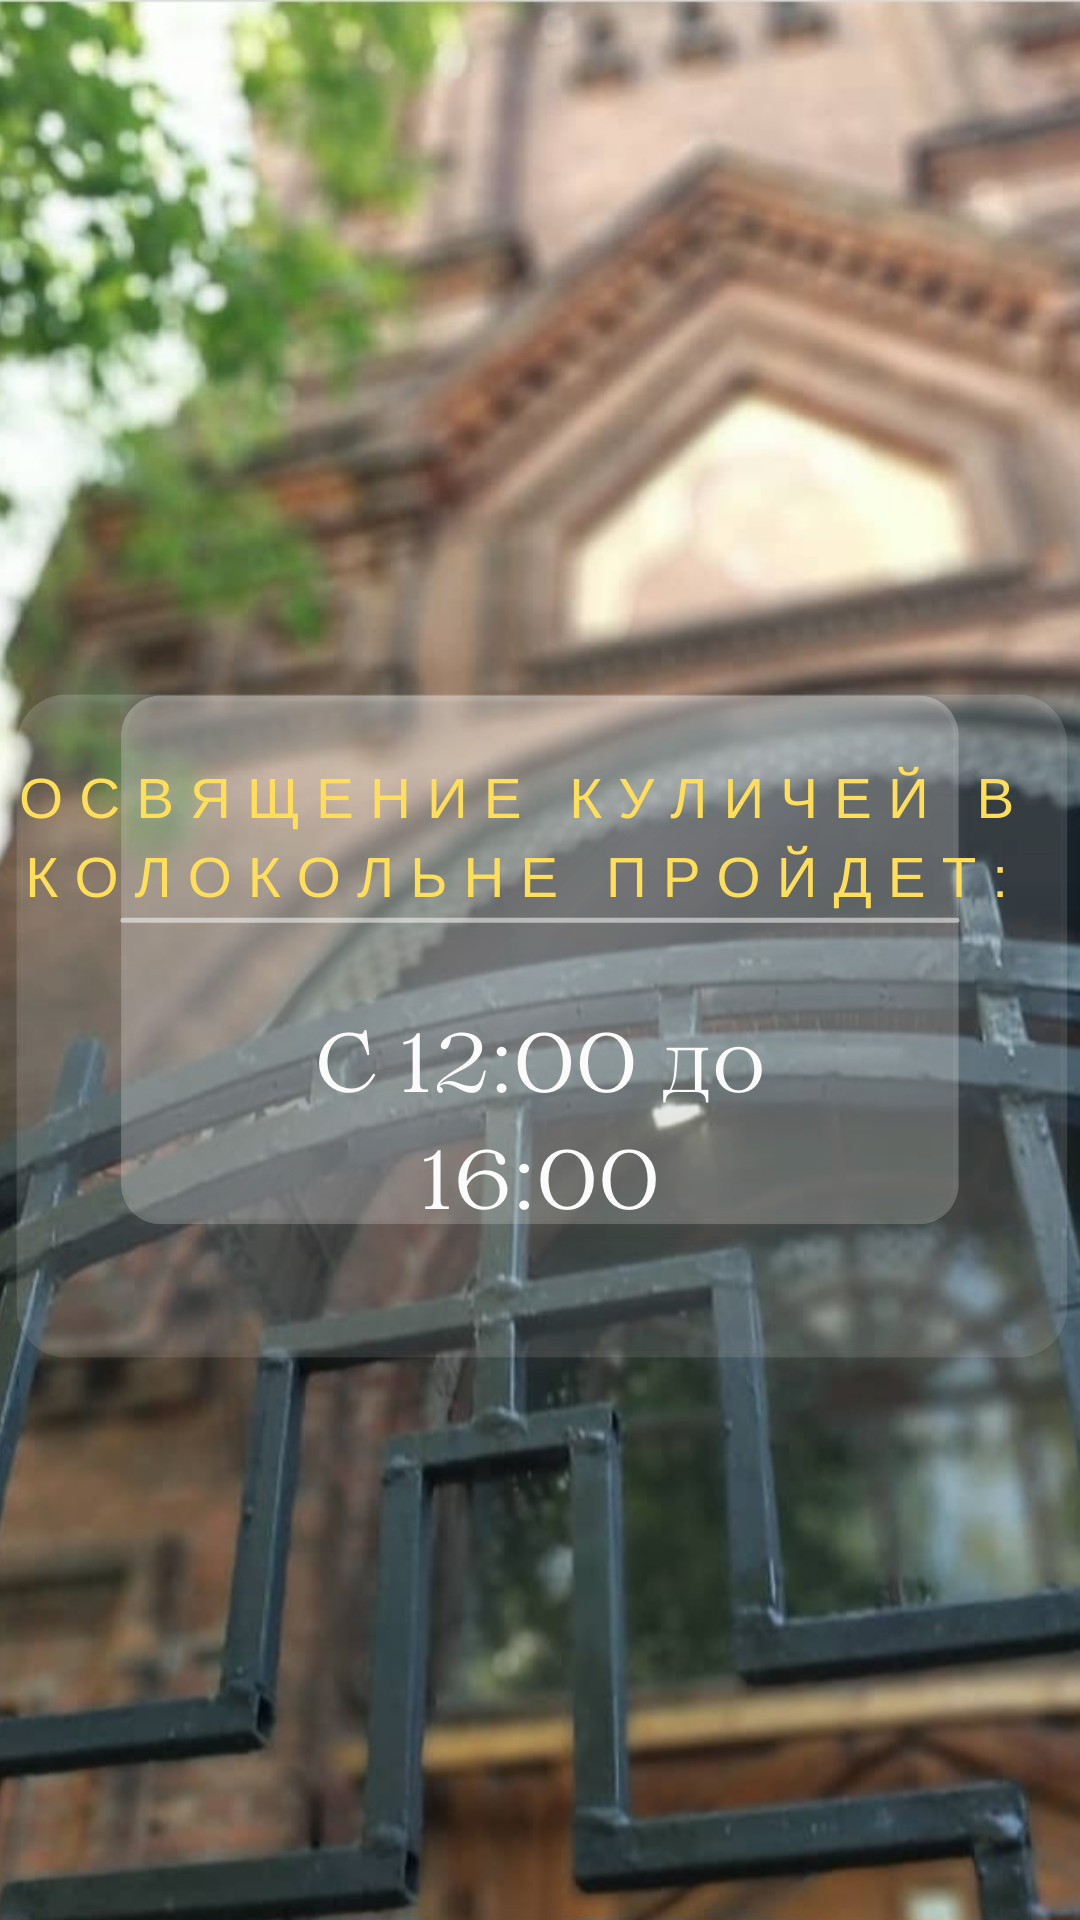 Освящение куличей в колокольне бывшего Казанского Головинского монастыря 1